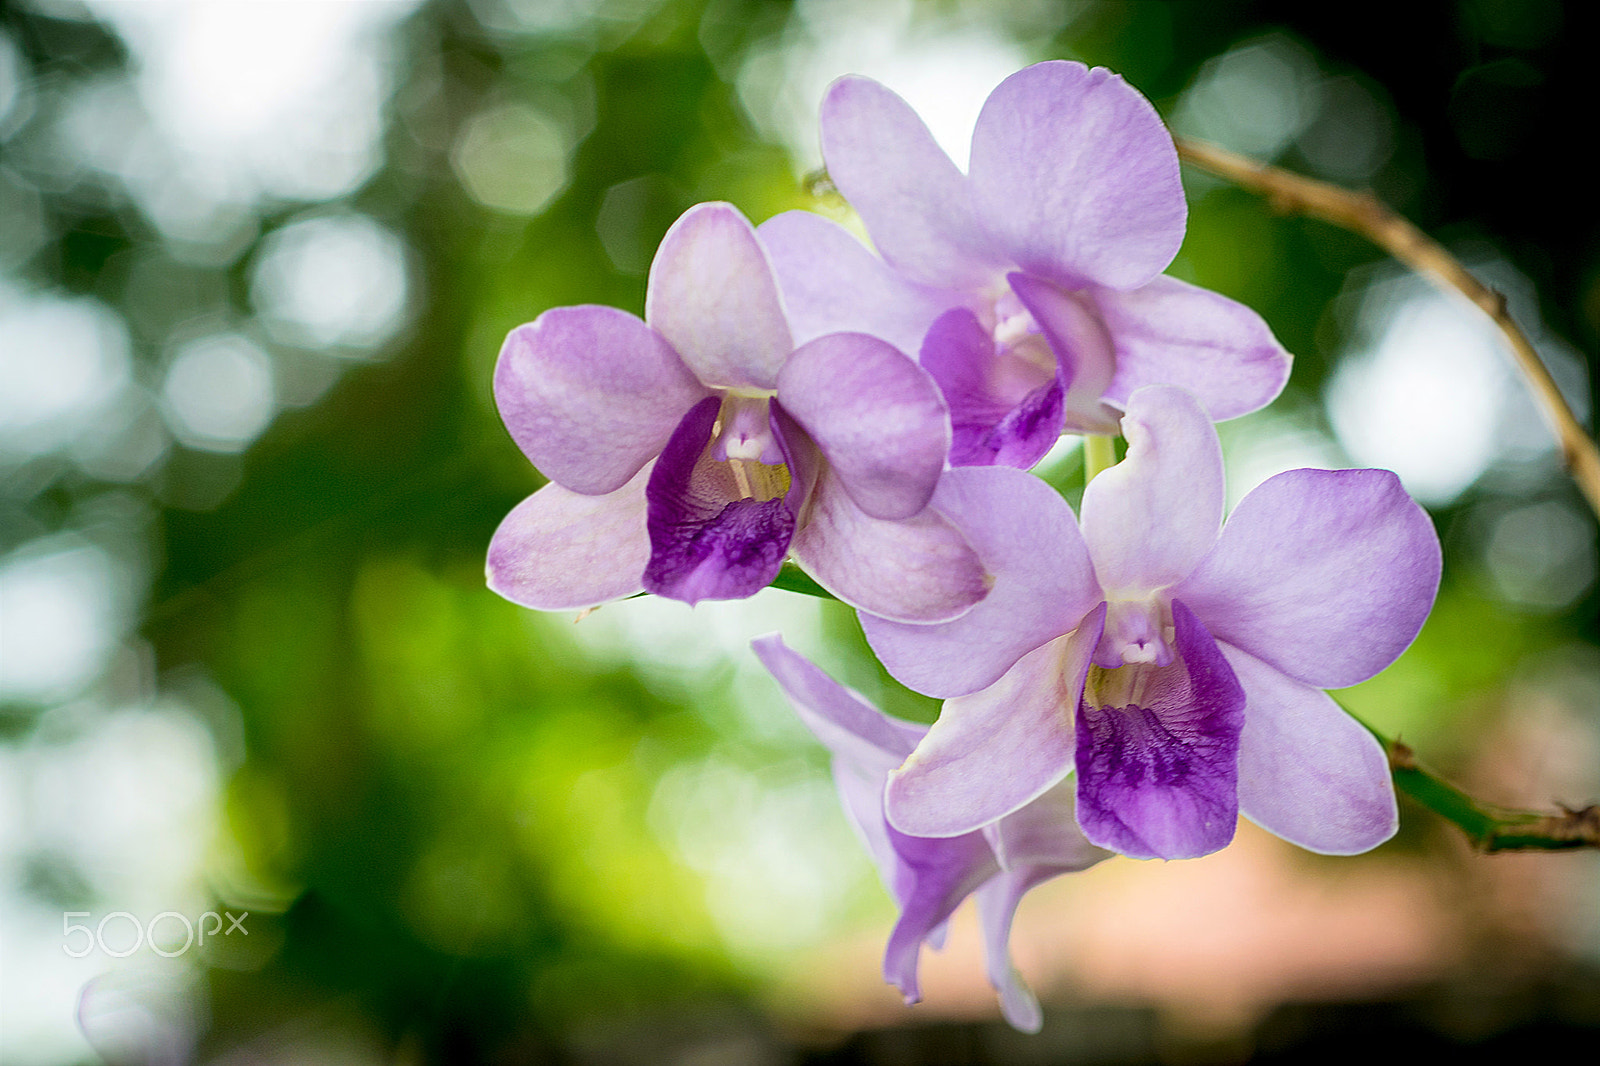 Nikon D5300 + Nikon AF Micro-Nikkor 60mm F2.8D sample photo. Violet orchid photography